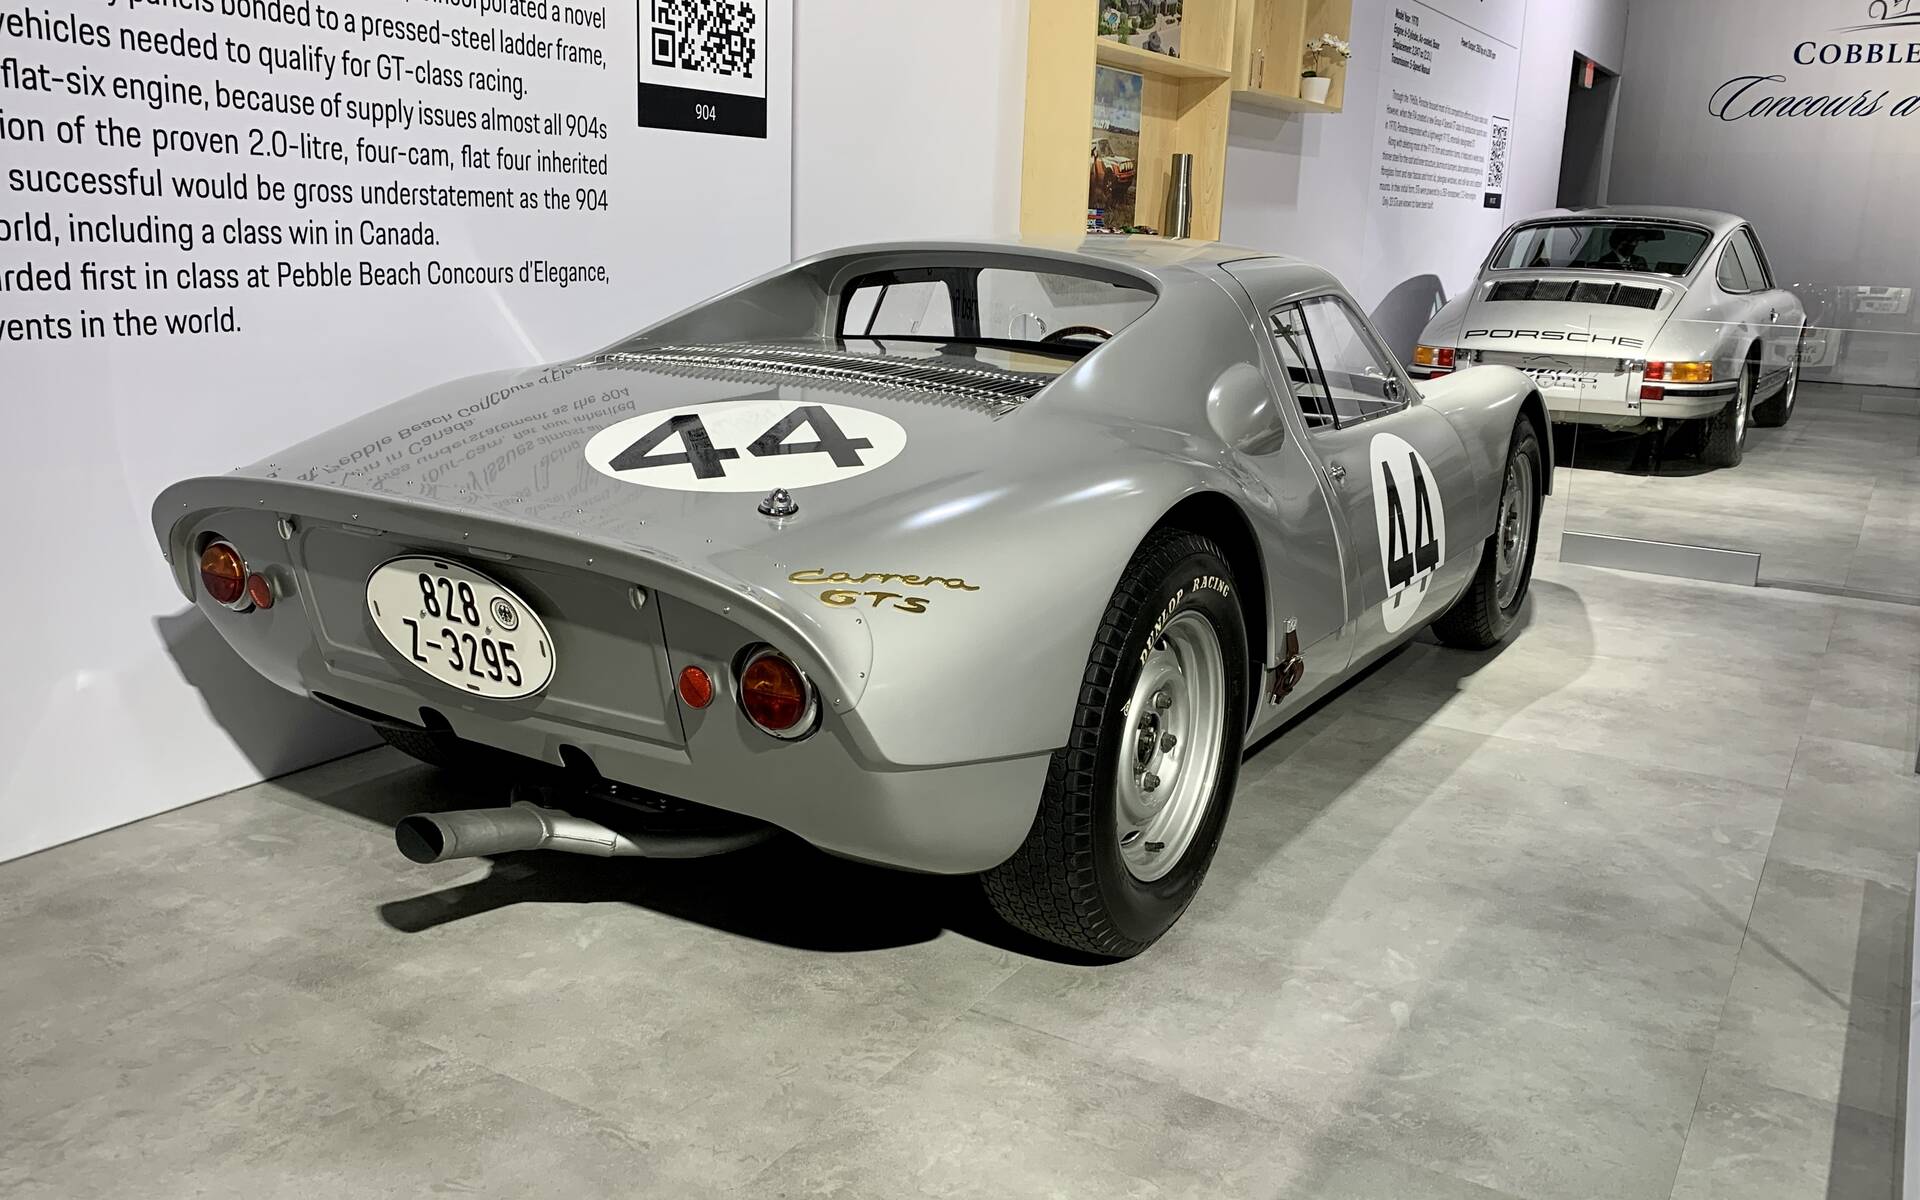 Salon de l’auto de Toronto : soulignons le 75e anniversaire de Porsche 562534-salon-de-l-auto-de-toronto-hommage-au-75e-anniversaire-de-porsche